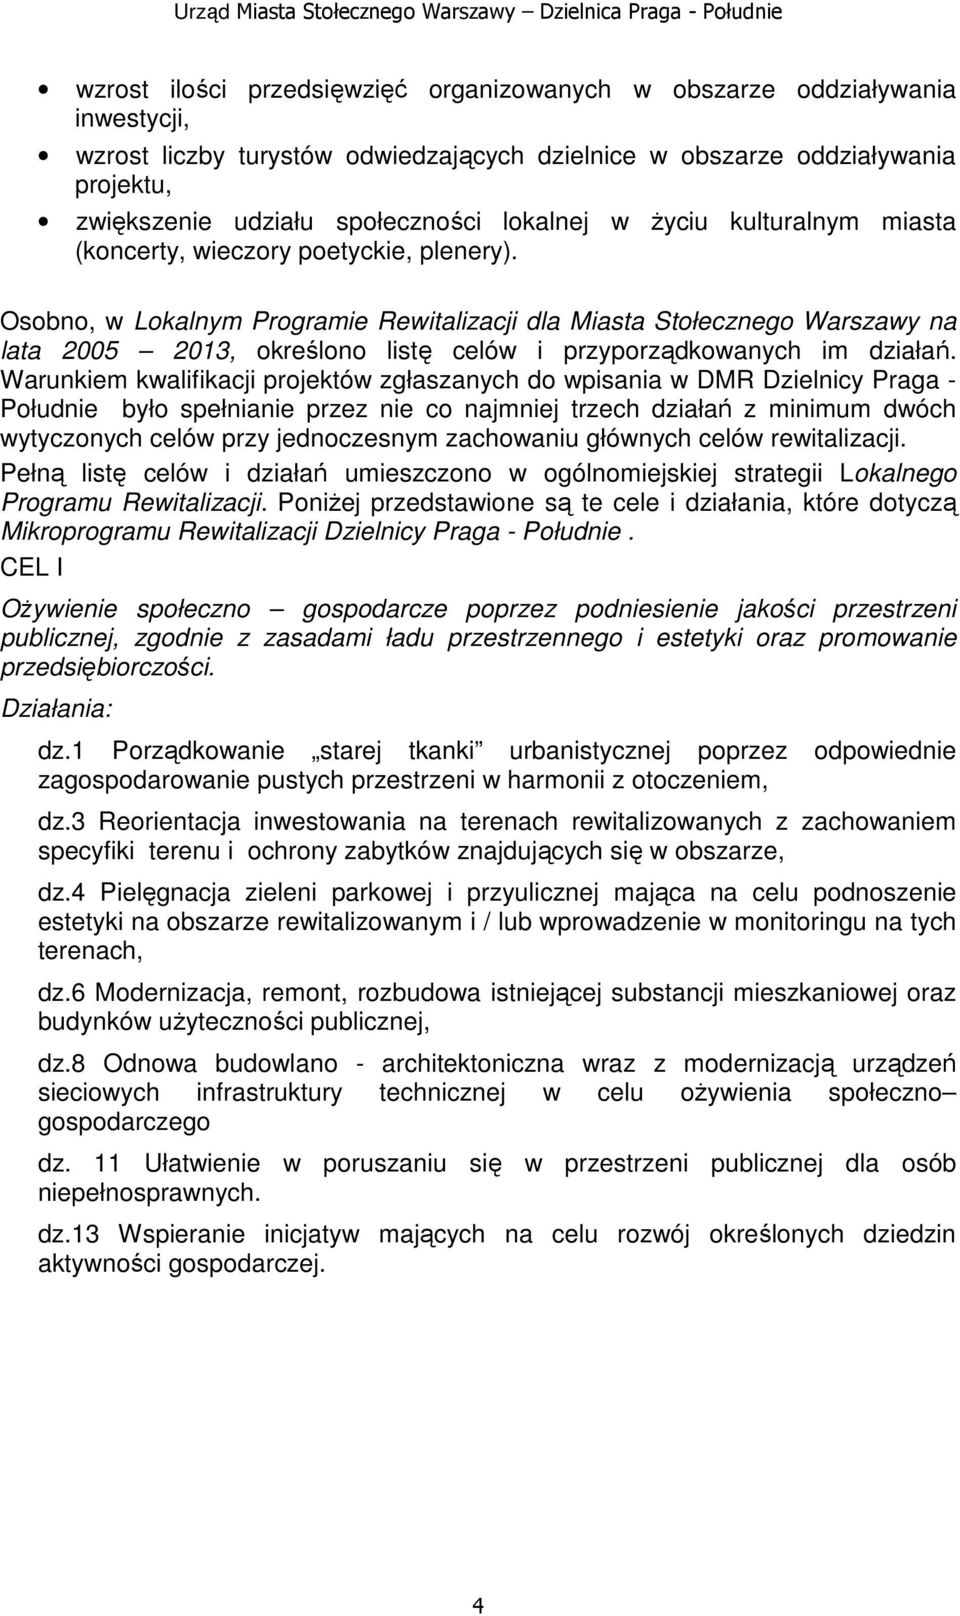 Osobno, w Lokalnym Programie Rewitalizacji dla Miasta Stołecznego Warszawy na lata 2005 2013, określono listę celów i przyporządkowanych im działań.